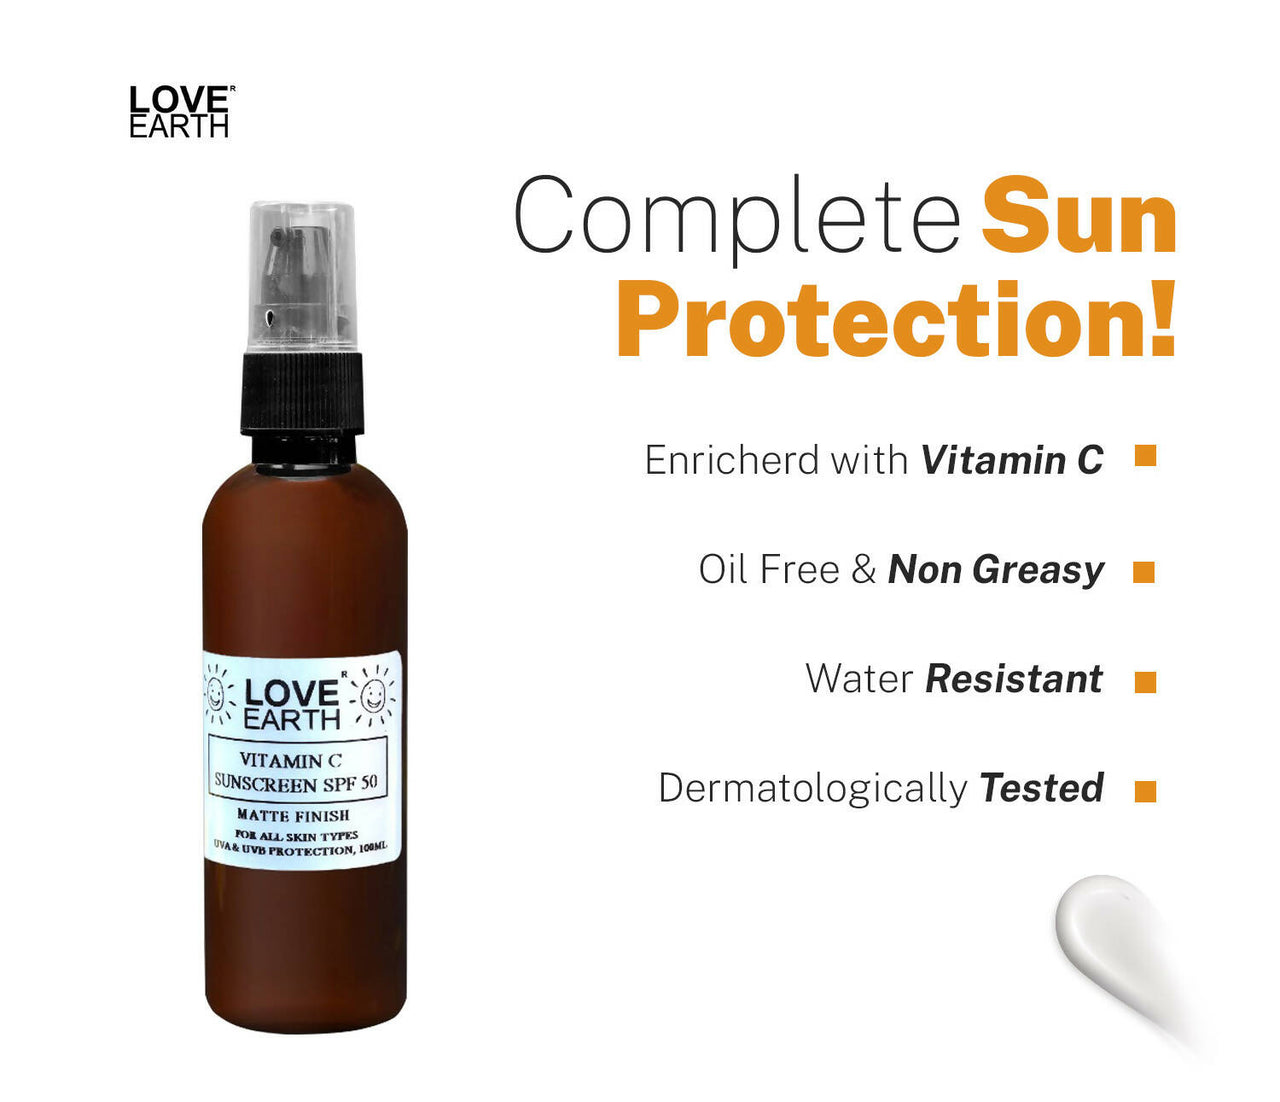 Love Earth Vitamin C – Sunscreen Spf 50 – Matte Finish - Distacart